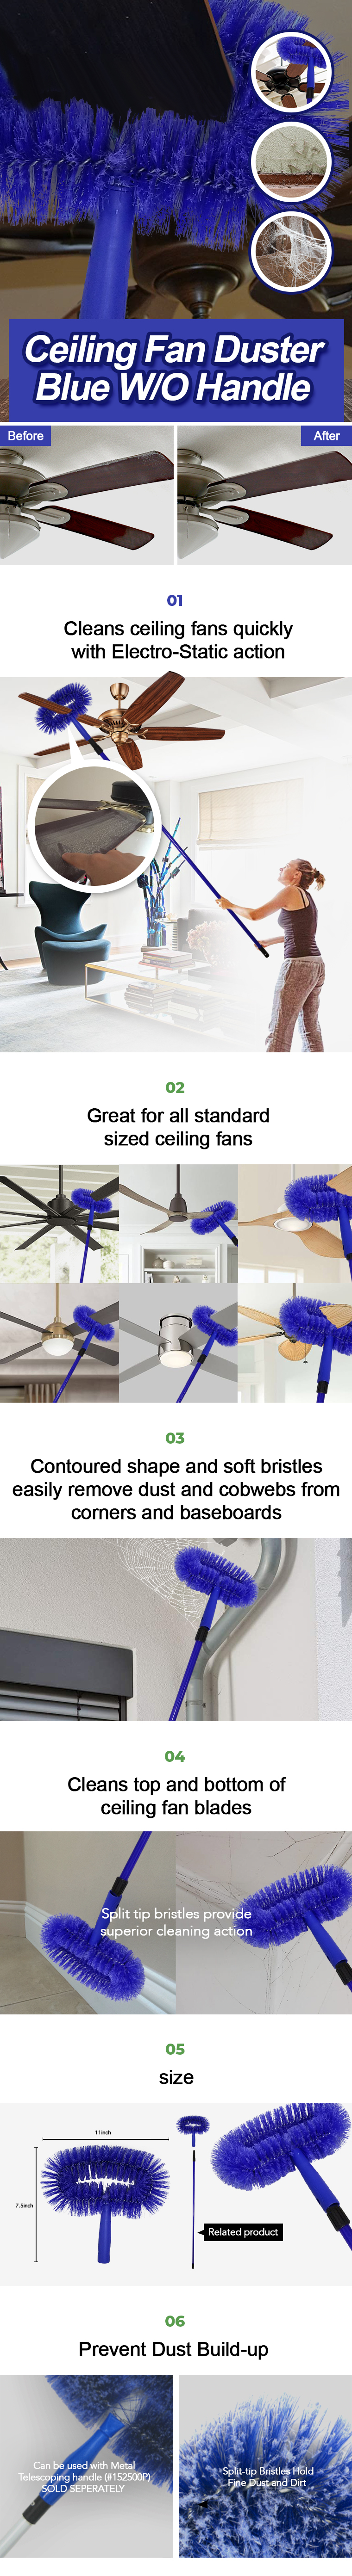 https://www.janilink.com/wp-content/uploads/2008/10/ceiling-fan-duster-blue.jpg